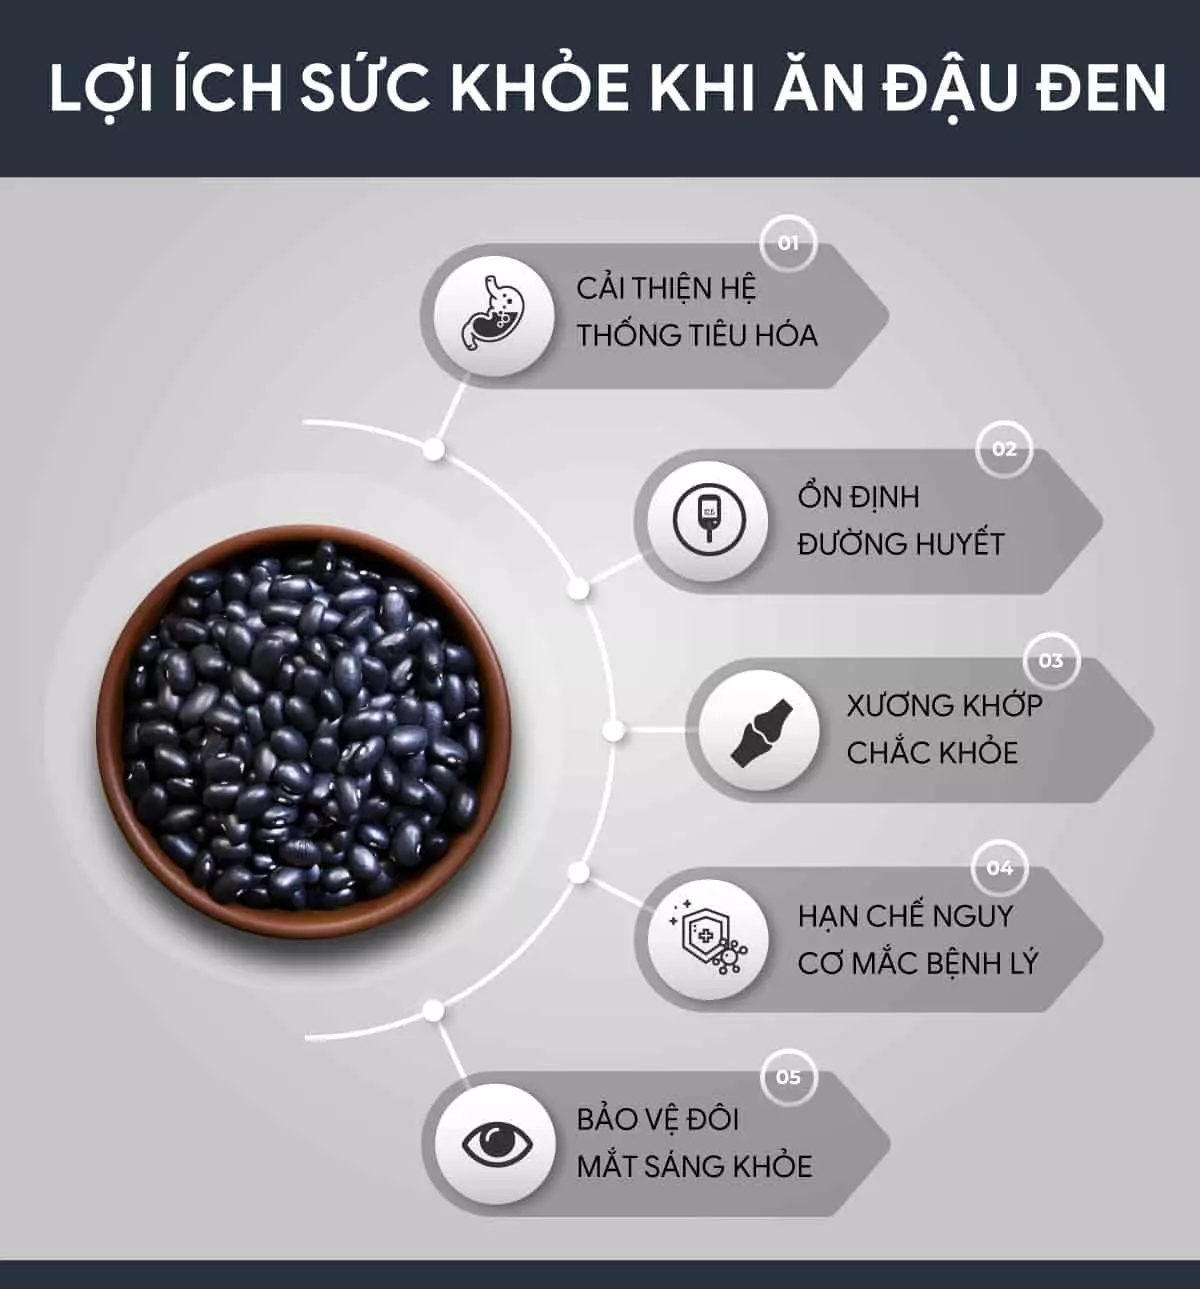 Đậu đen là thực phẩm dinh dưỡng, đậu đen được sử dụng rất phổ biến và chế biến đa dạng món ăn thơm ngon. Hãy cùng tìm hiểu đậu đen bao nhiêu calo...